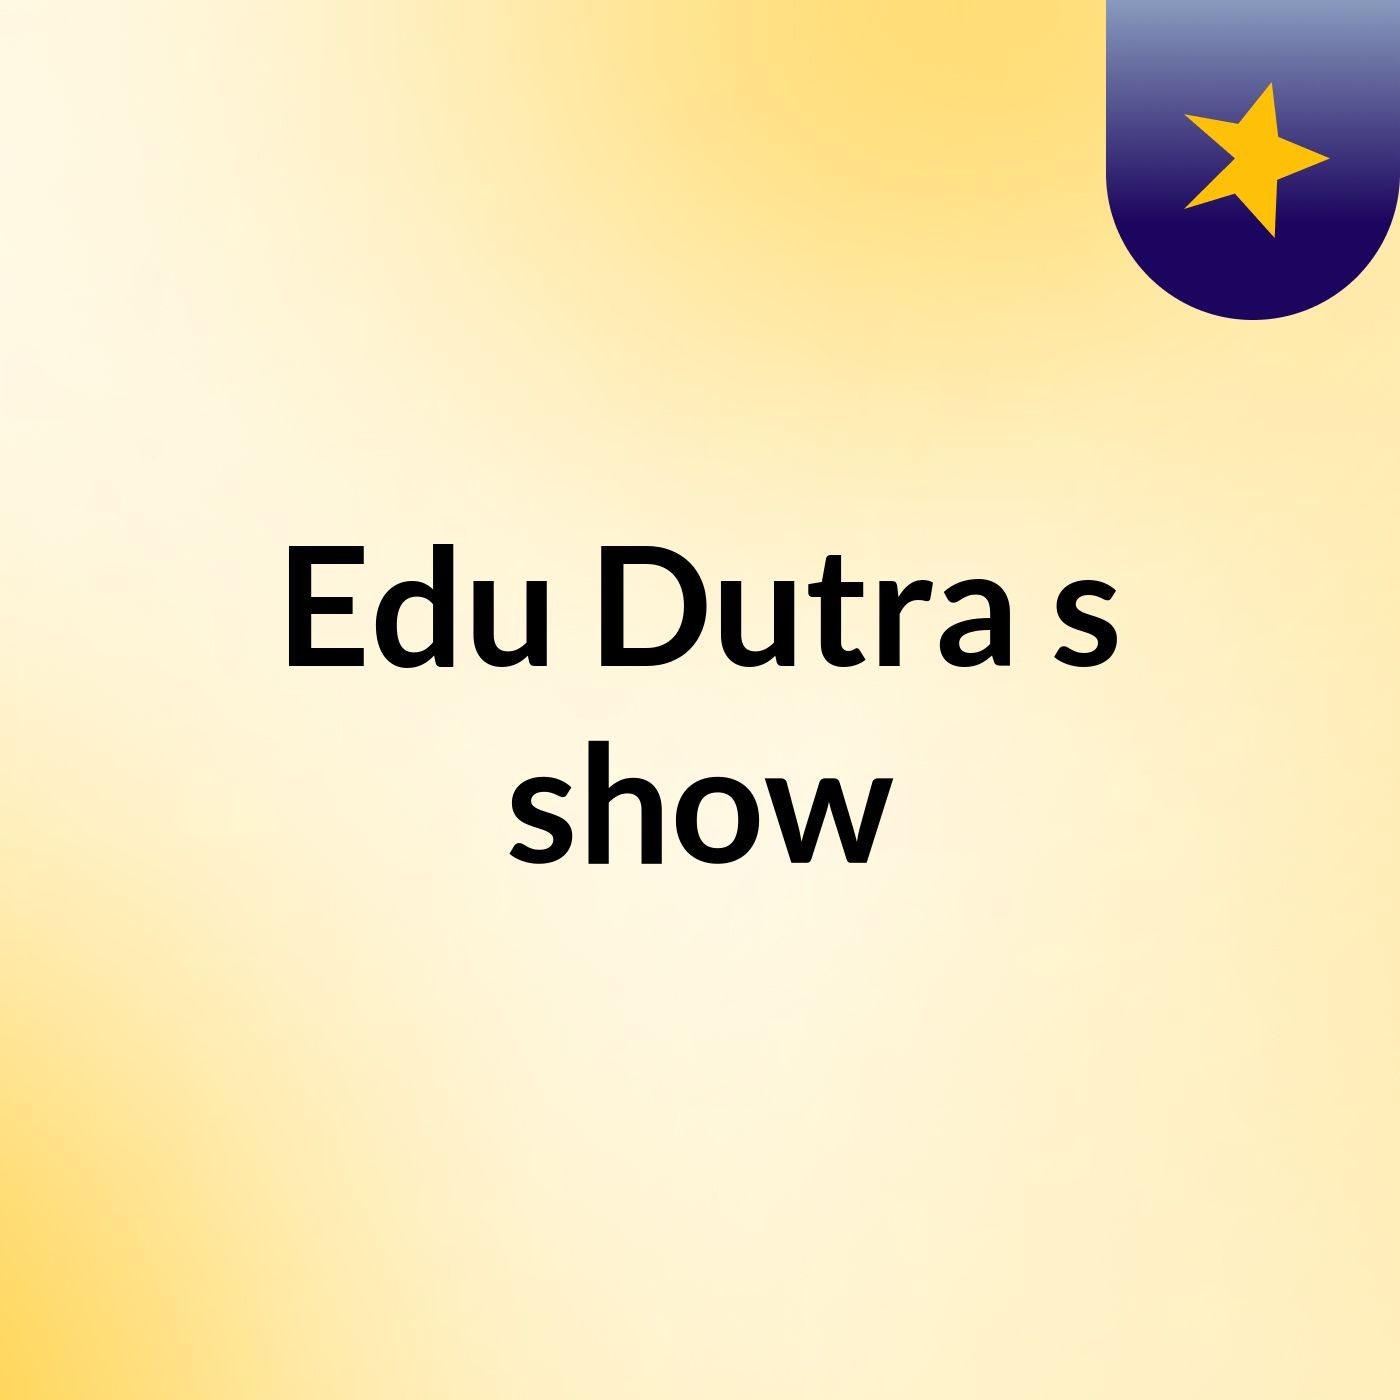 Edu Dutra's show